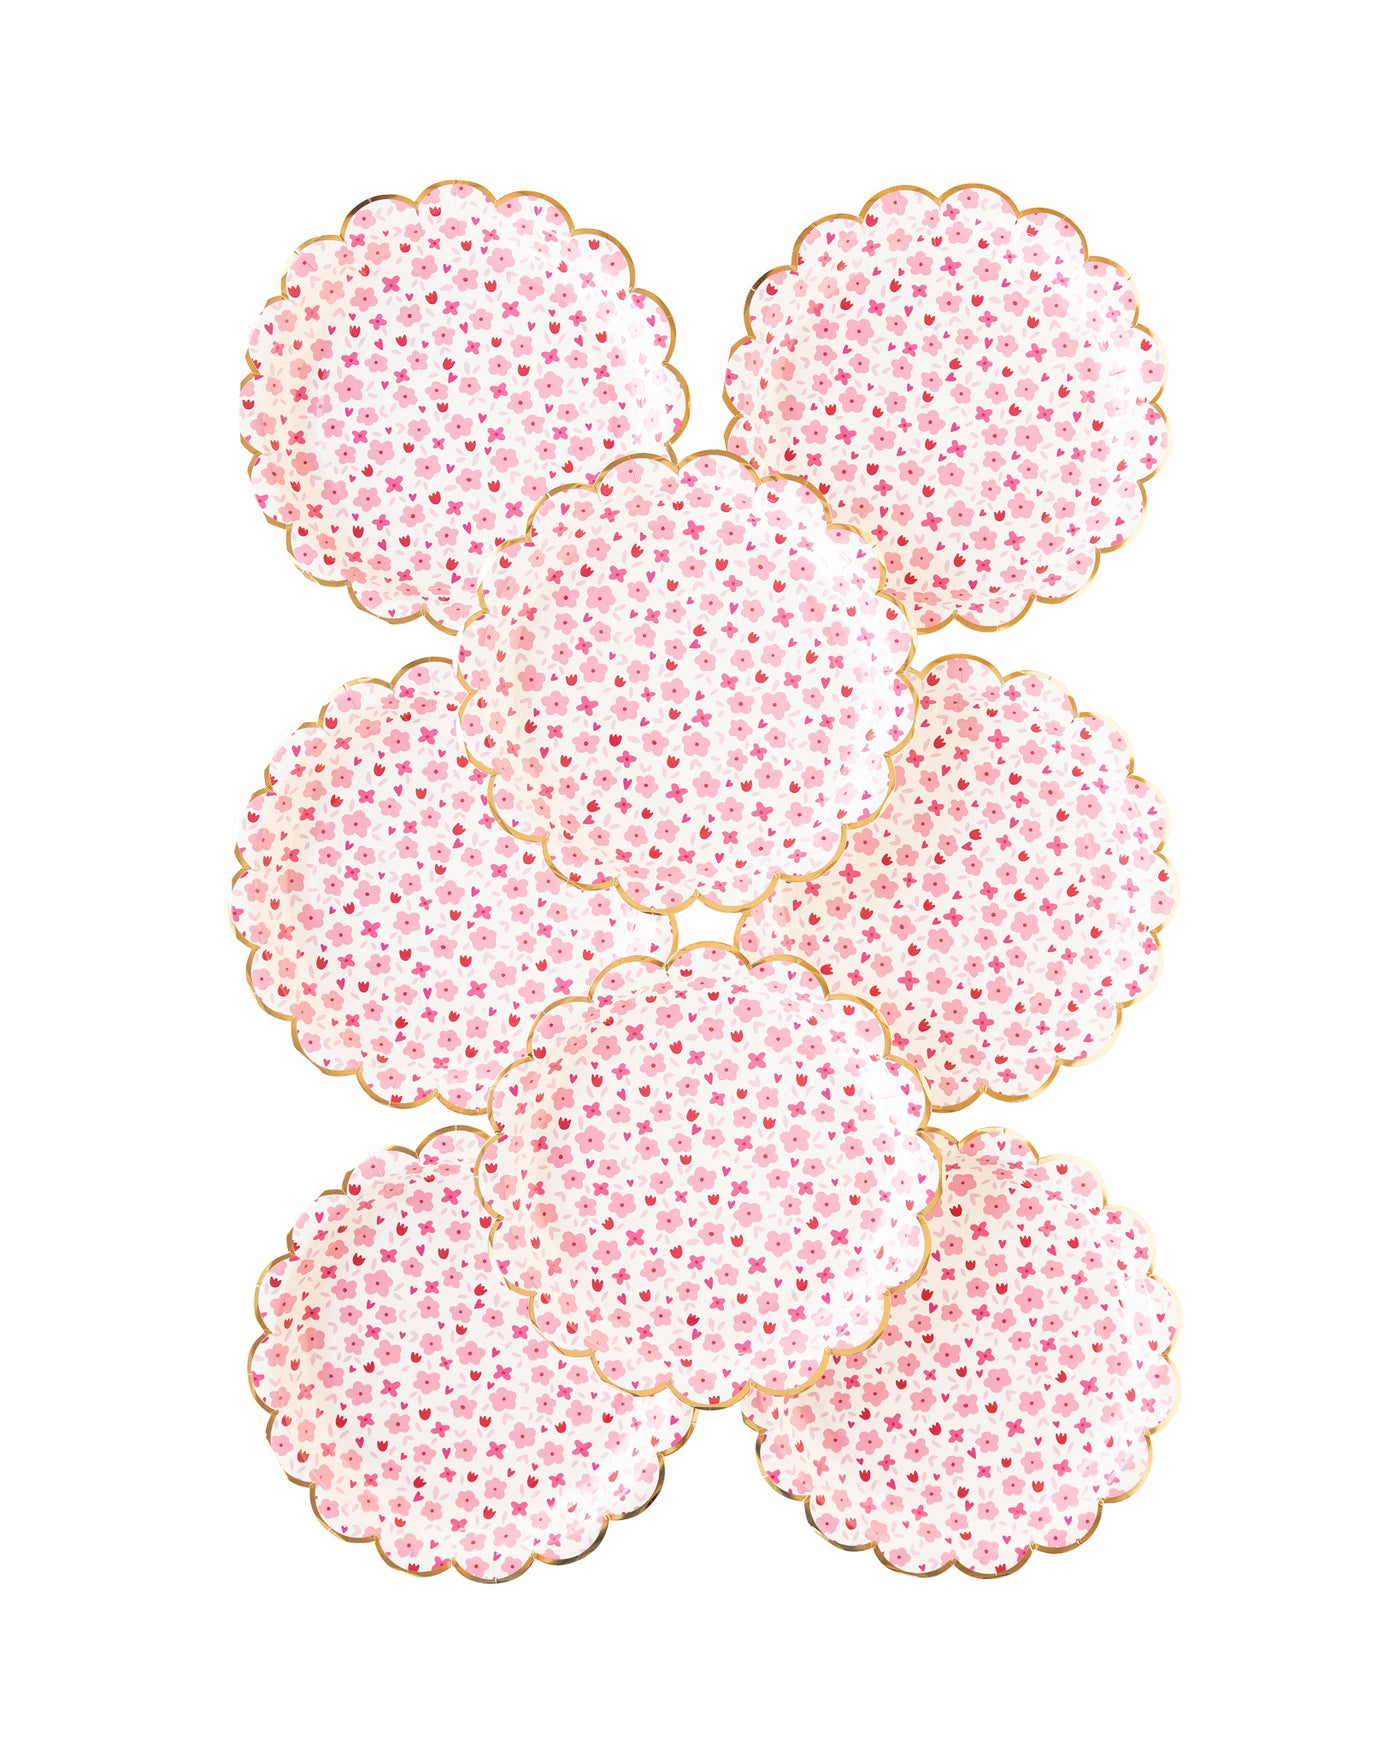 PLPL107 - Flower Fields Paper Plate